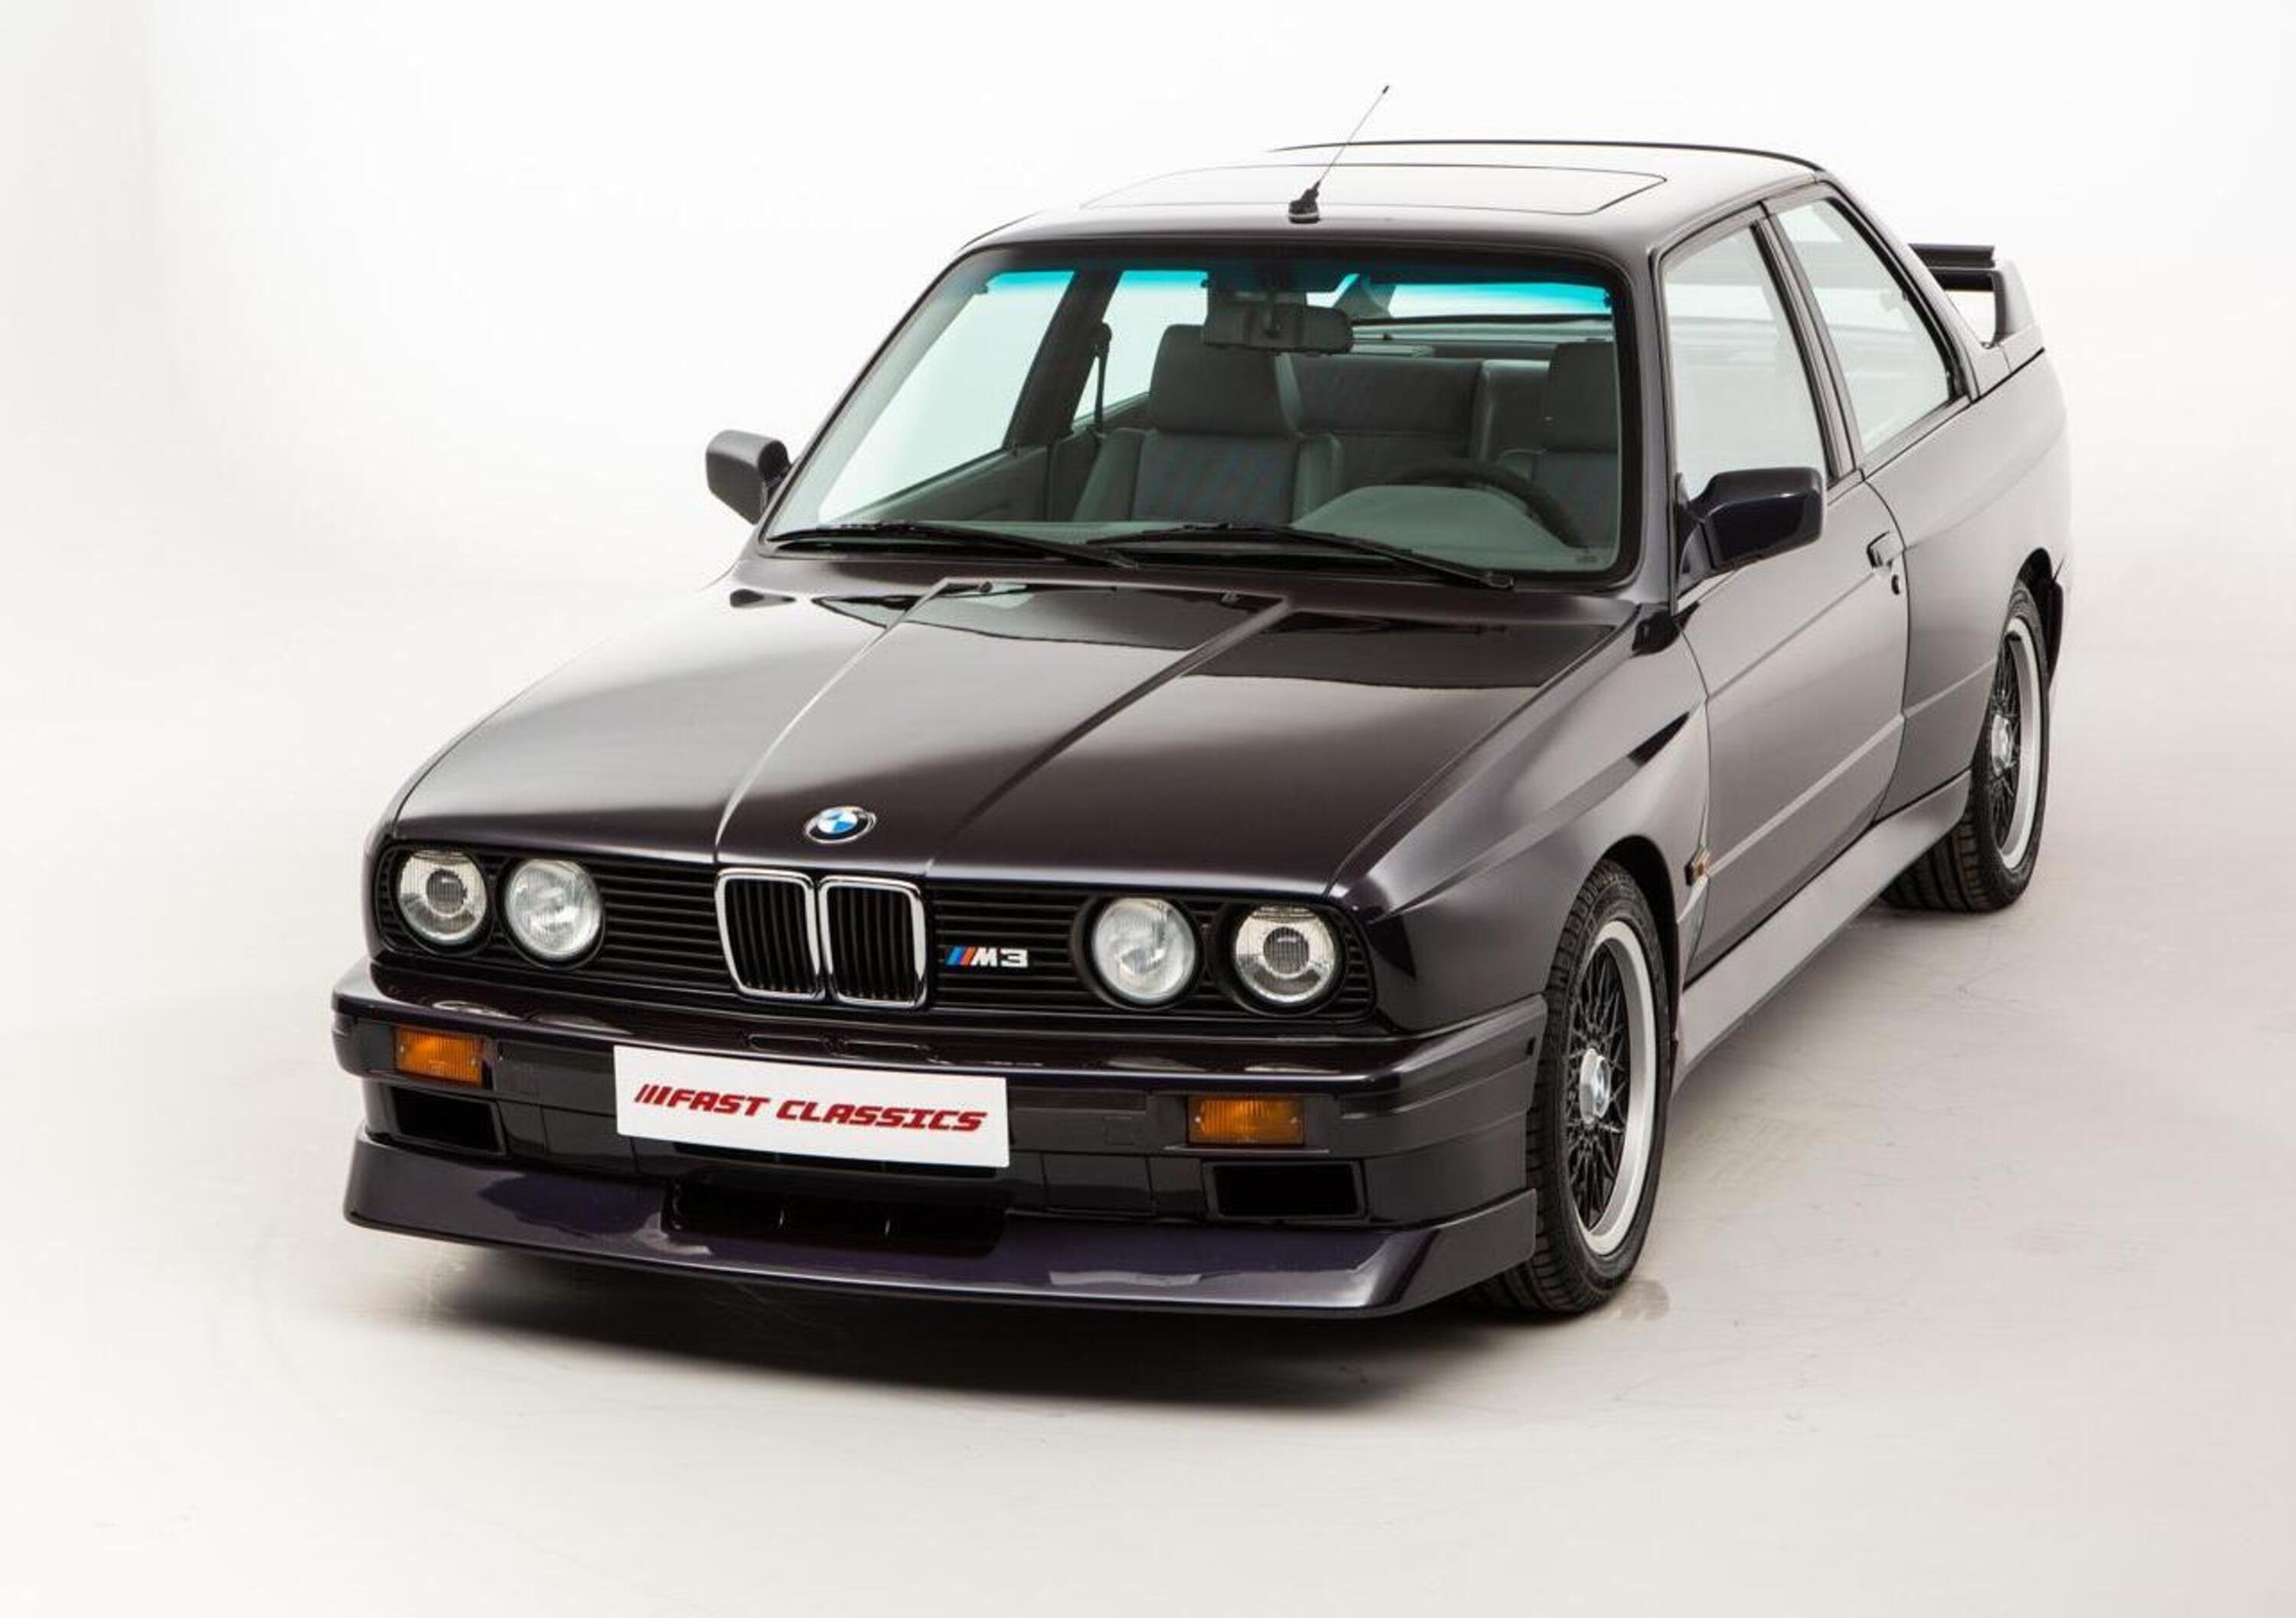 In vendita una rara BMW M3 e30 Johnny Cecotto Edition